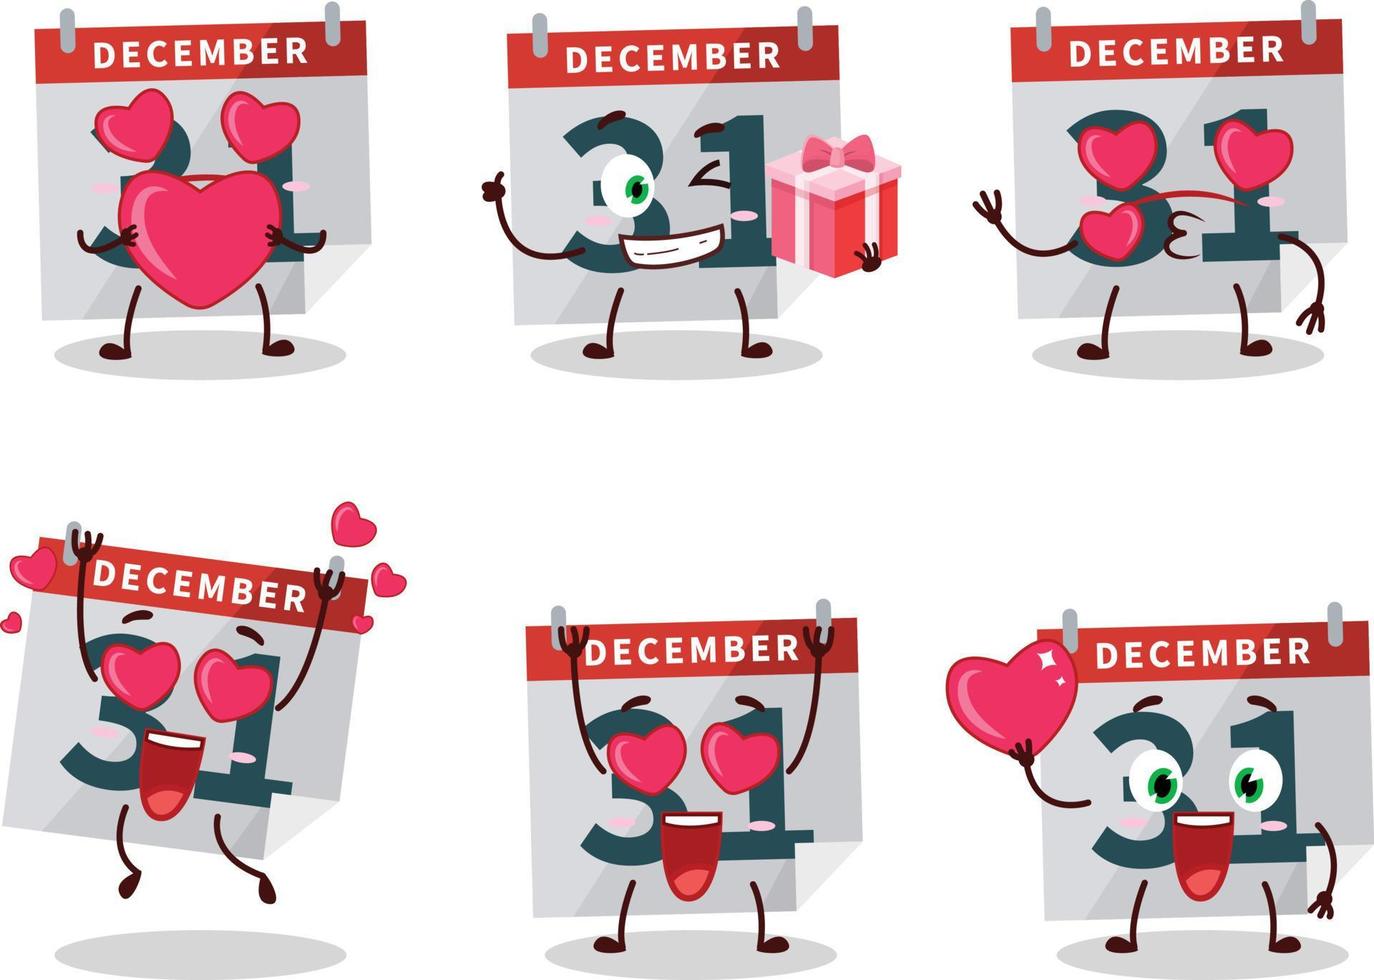 dicembre 31 calendario cartone animato personaggio con amore carino emoticon vettore